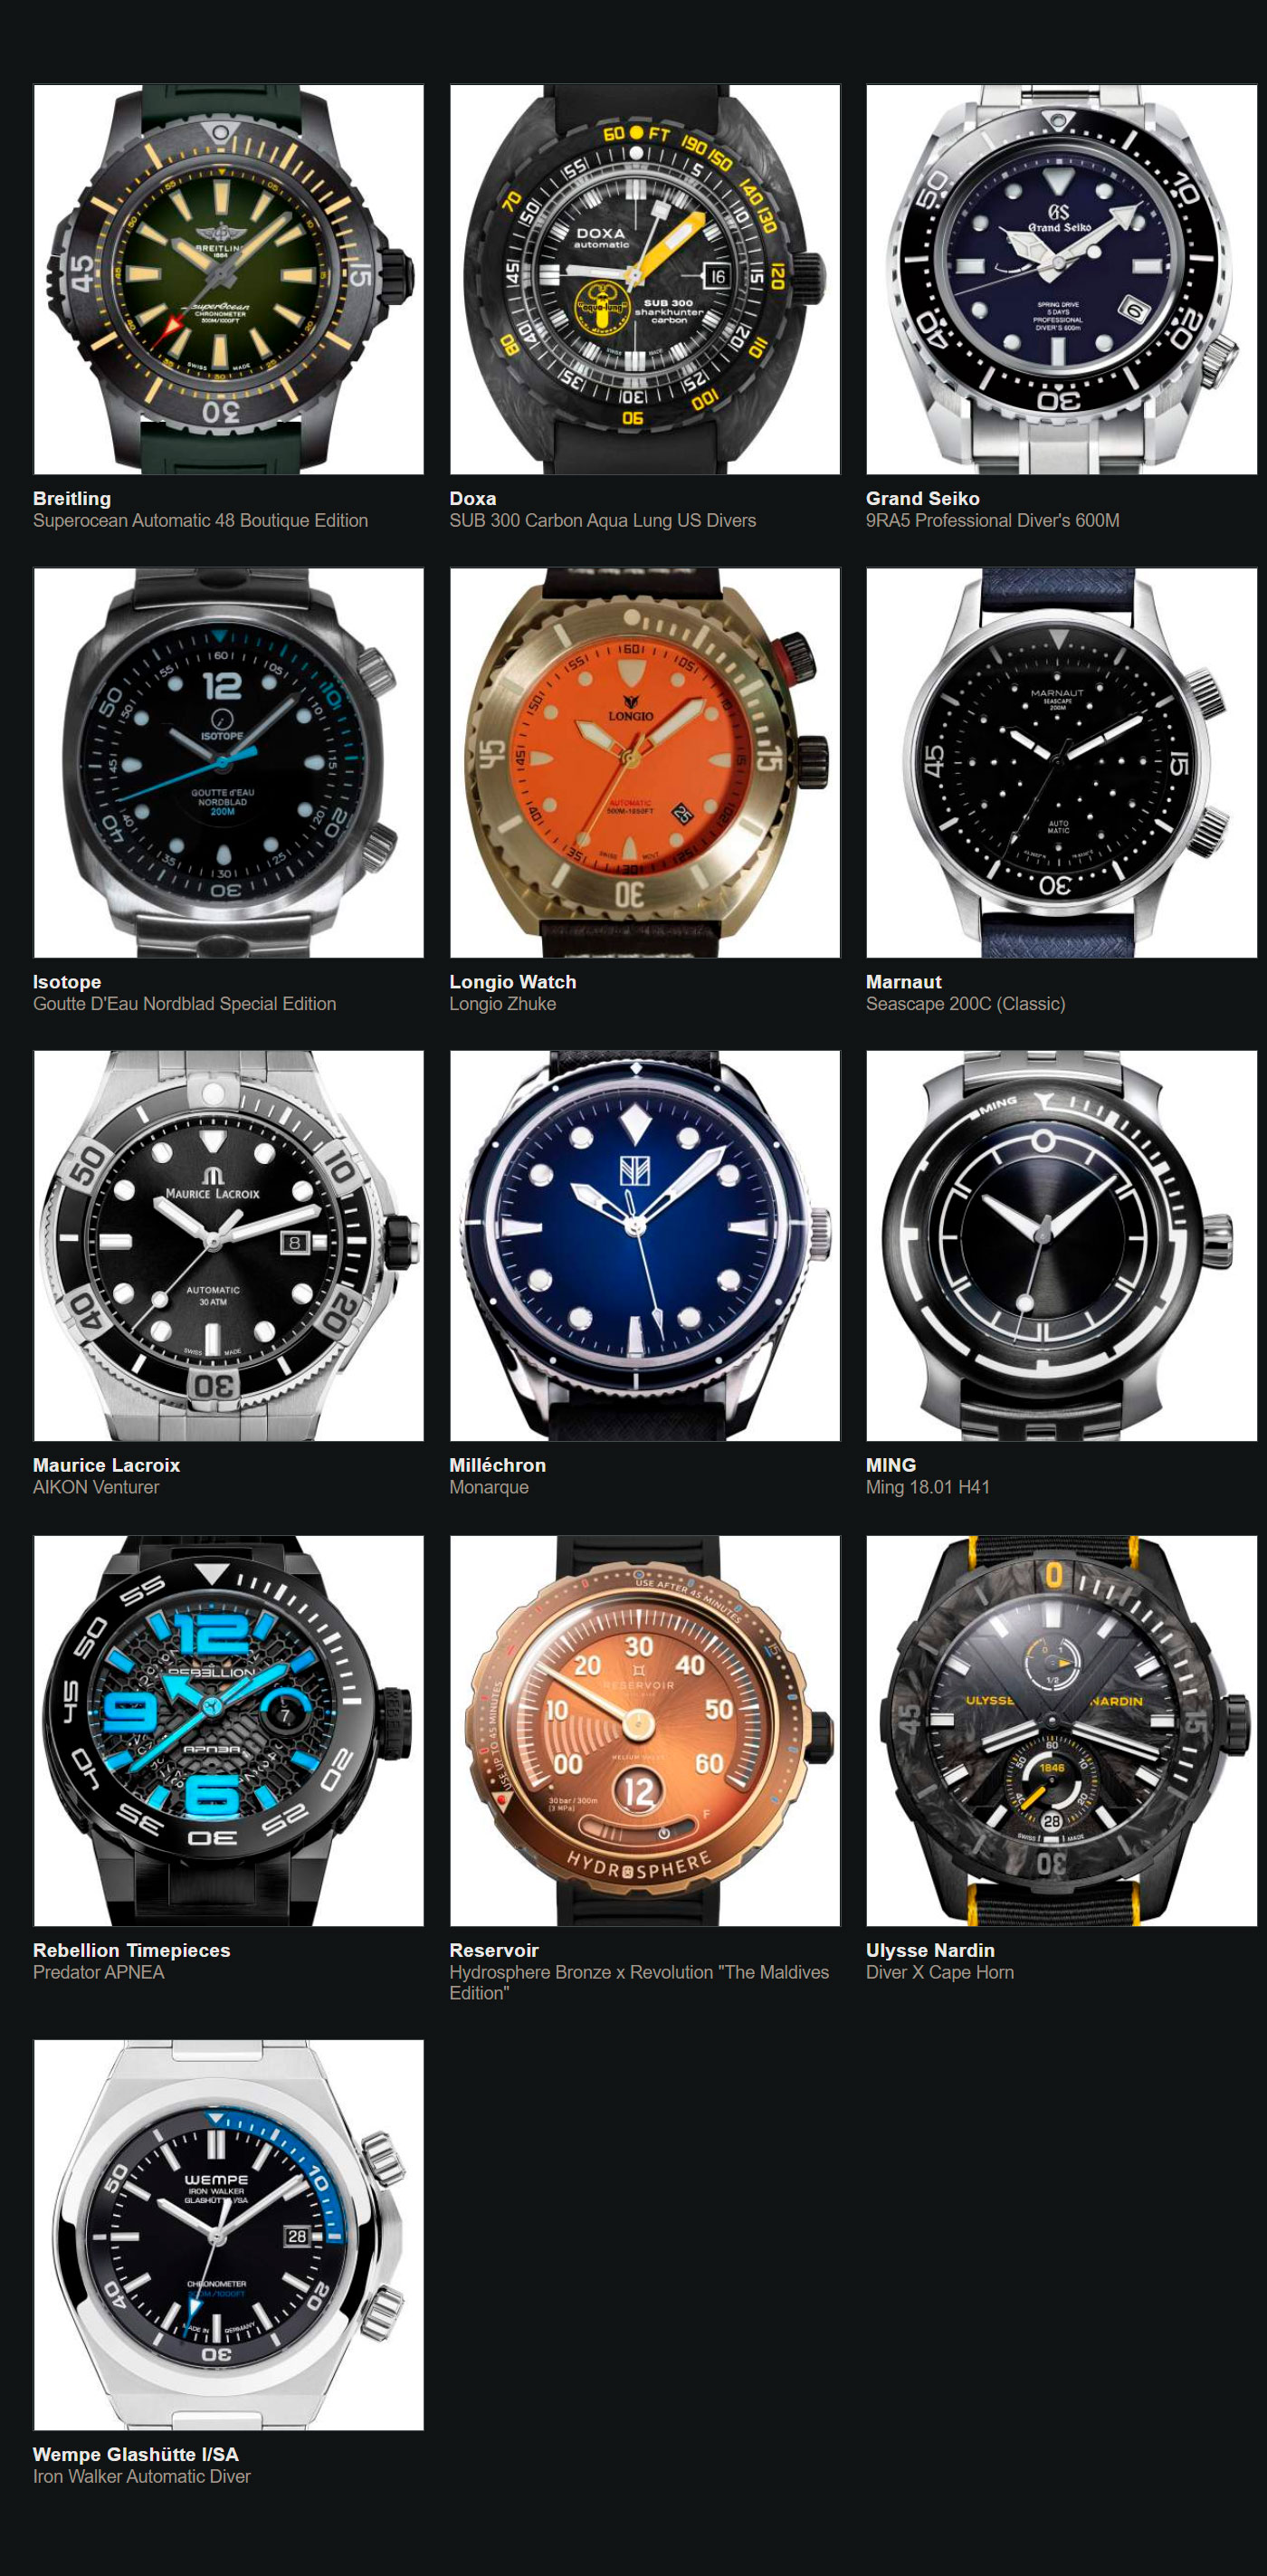 Relojes preseleccionados para el Gran Premio de Relojería de Ginebra 2020 Divers